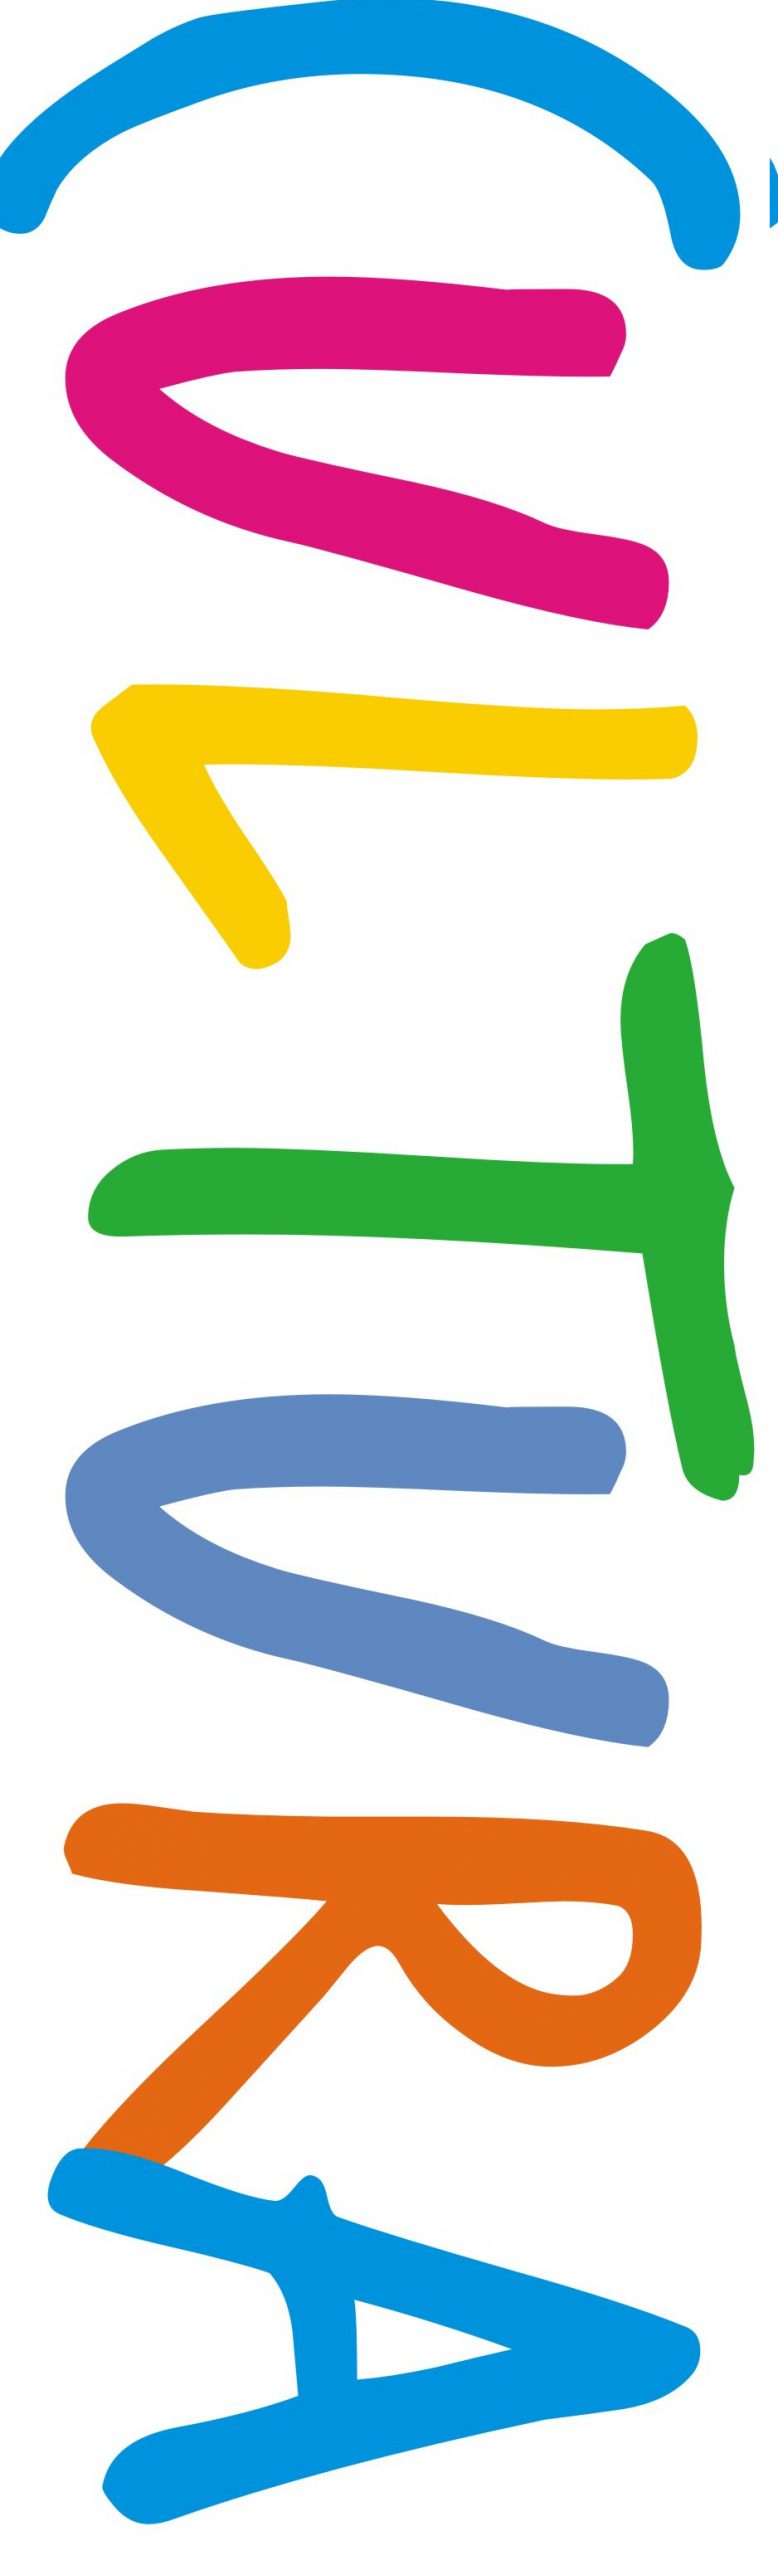 cultura_logo